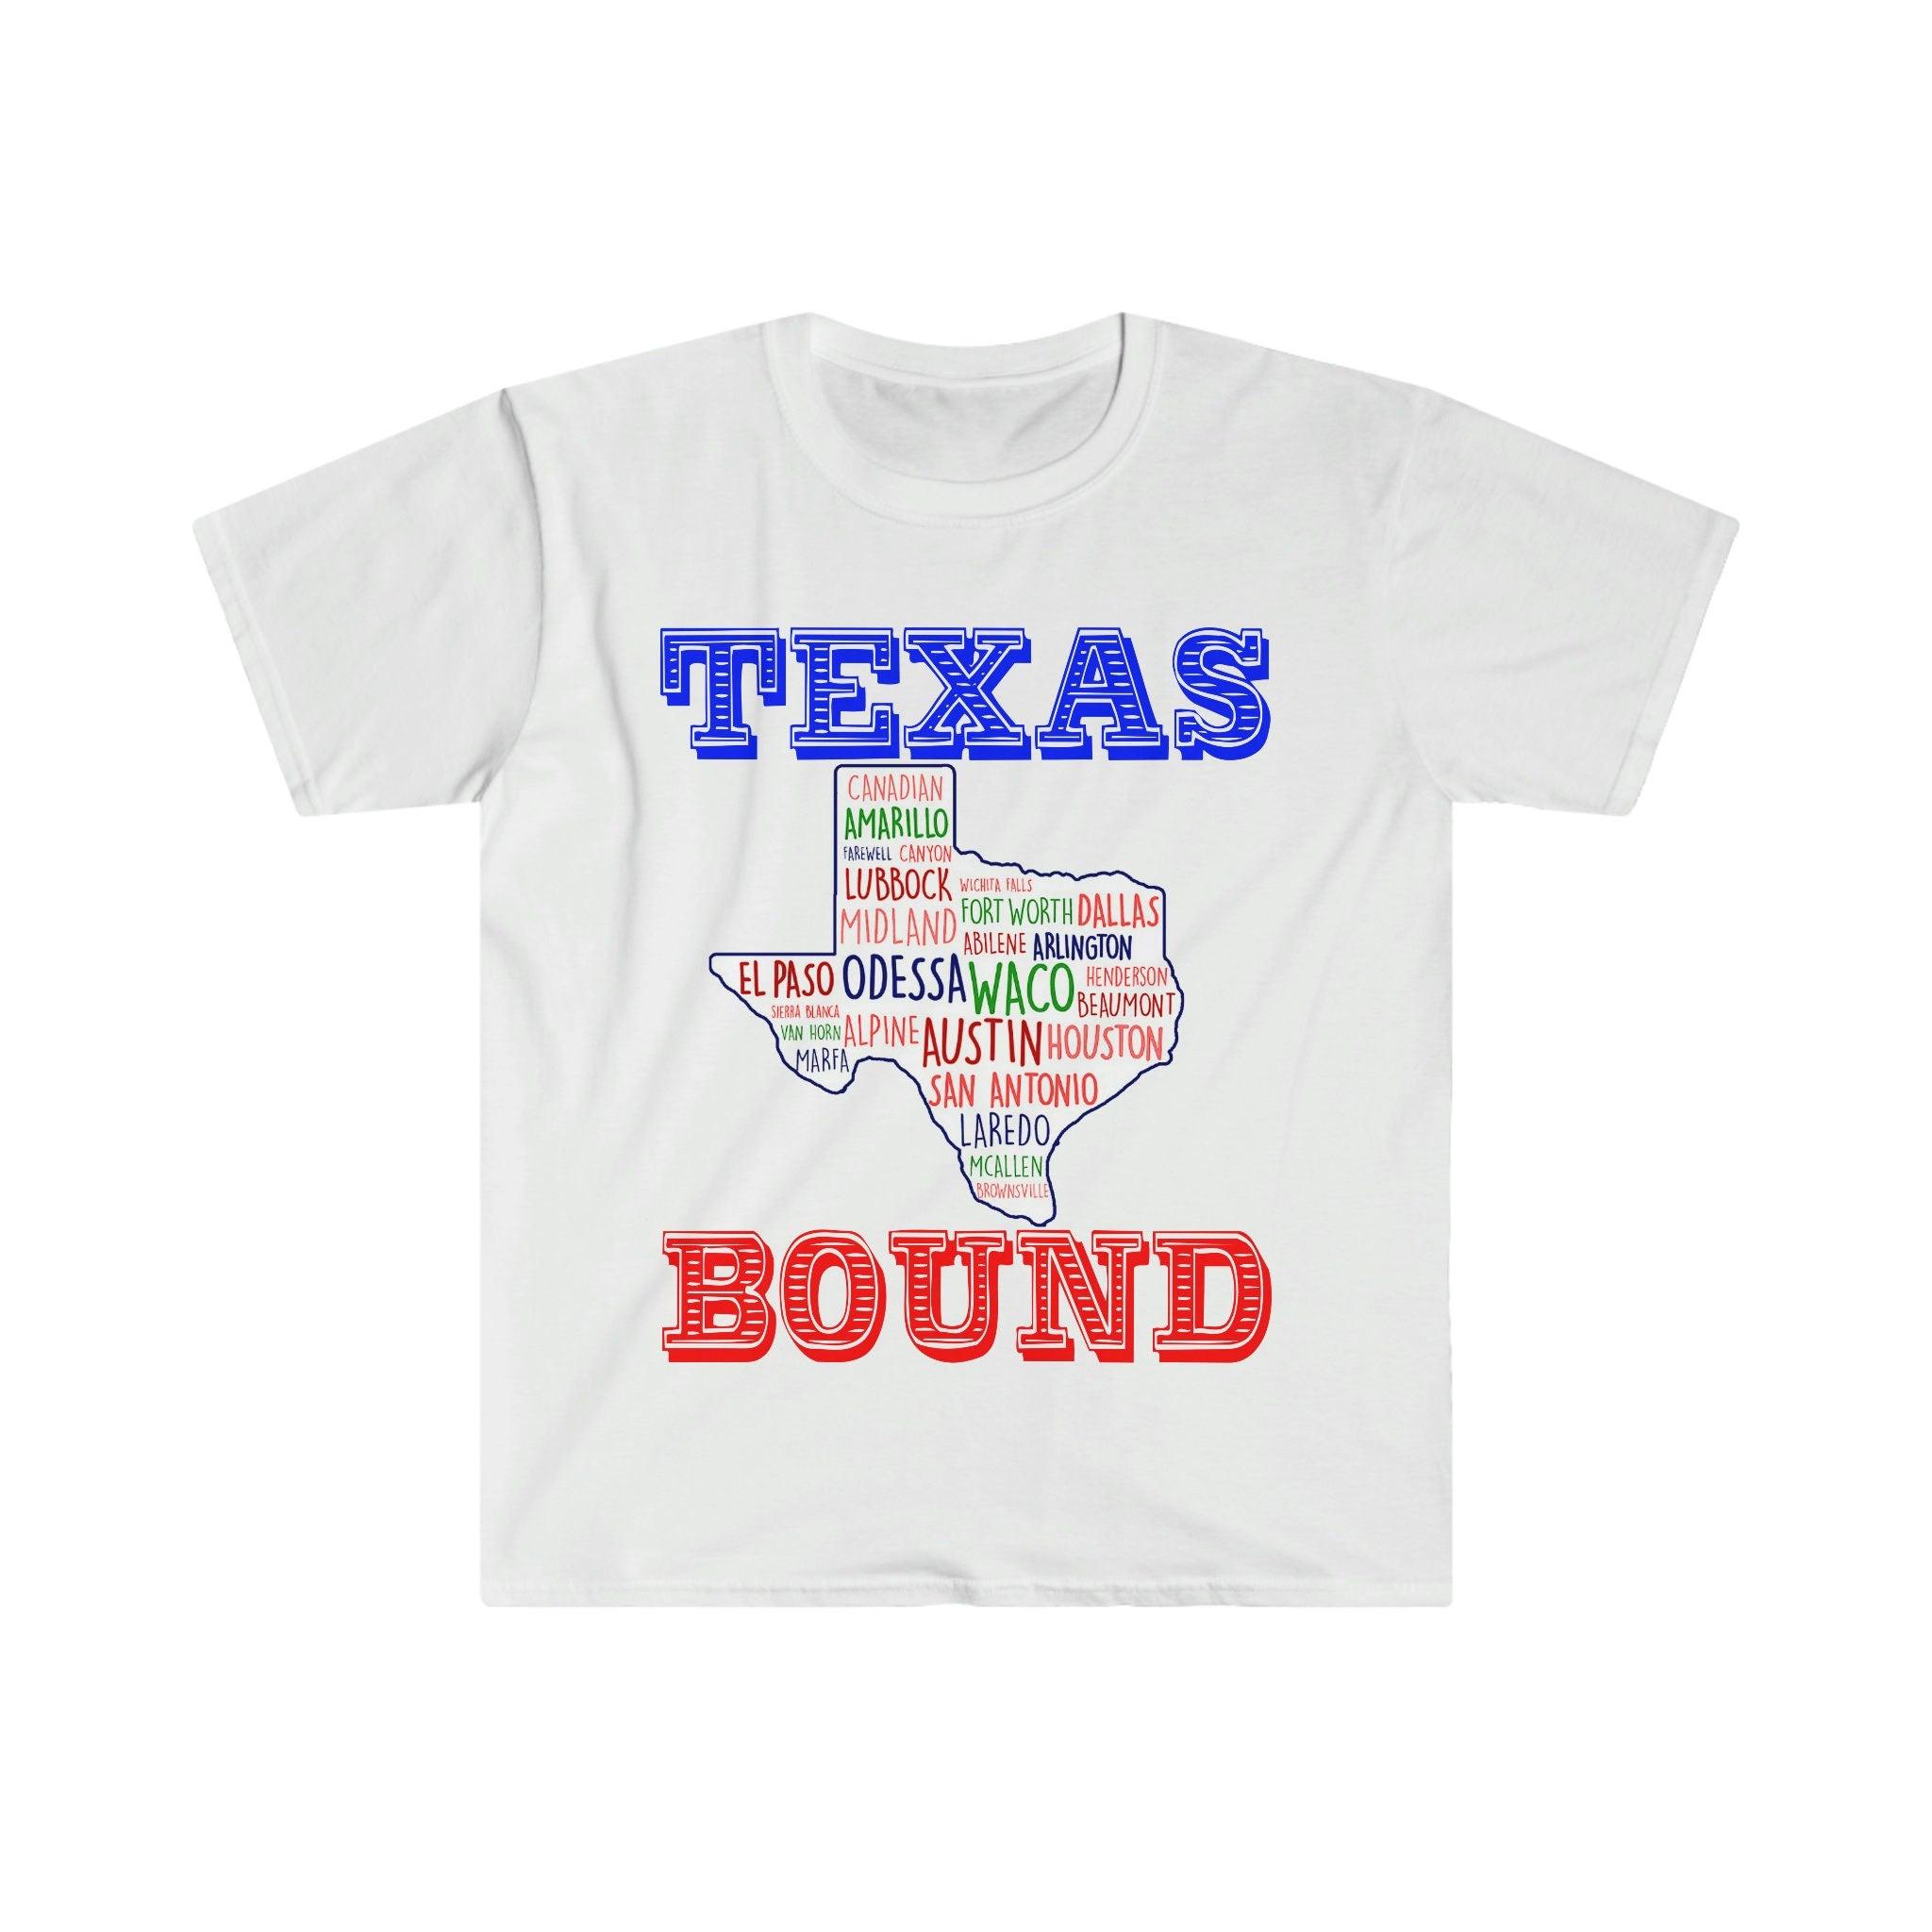 Texas Bound | Texas Places T-paidat |Texas Map T-paidat, Muutto Austiniin , Tervetuloa Texas Giftiin, Texas Bound, Uusi Texasissa, Muutto DFW:hen Beat bidenin veronkorotus, Bidenin verosuunnitelma, rannikkoliberaali, Houston, muutto Austiniin, Muutto DFW:lle, Moving To Texas, Moving to Texas Muki, Uusi Texasissa, republikaani, T-paidat, Teksasissa sidottu, texas-tyttö, texasin tasavaltalainen in - plusminusco.com